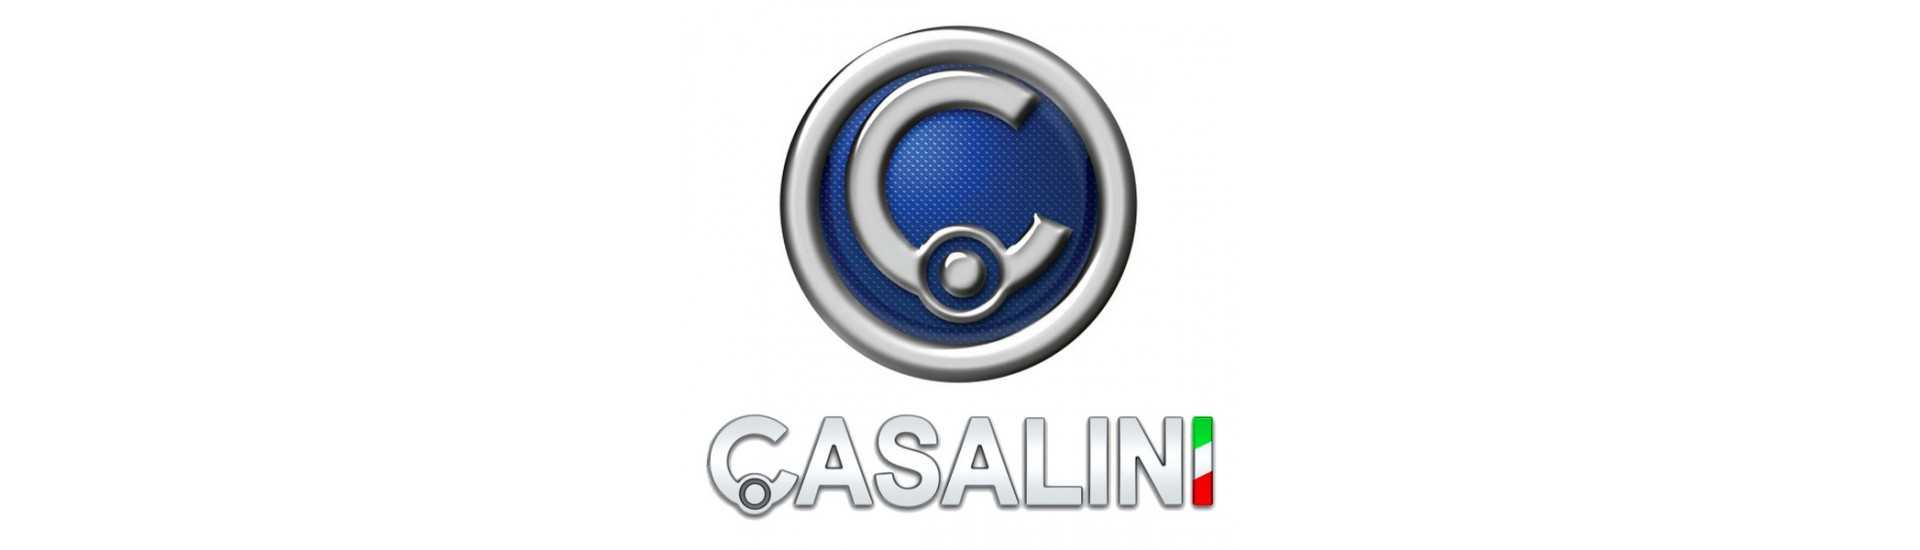 Goujon y nuez de rueda al mejor precio del coche sin un permiso Casalini